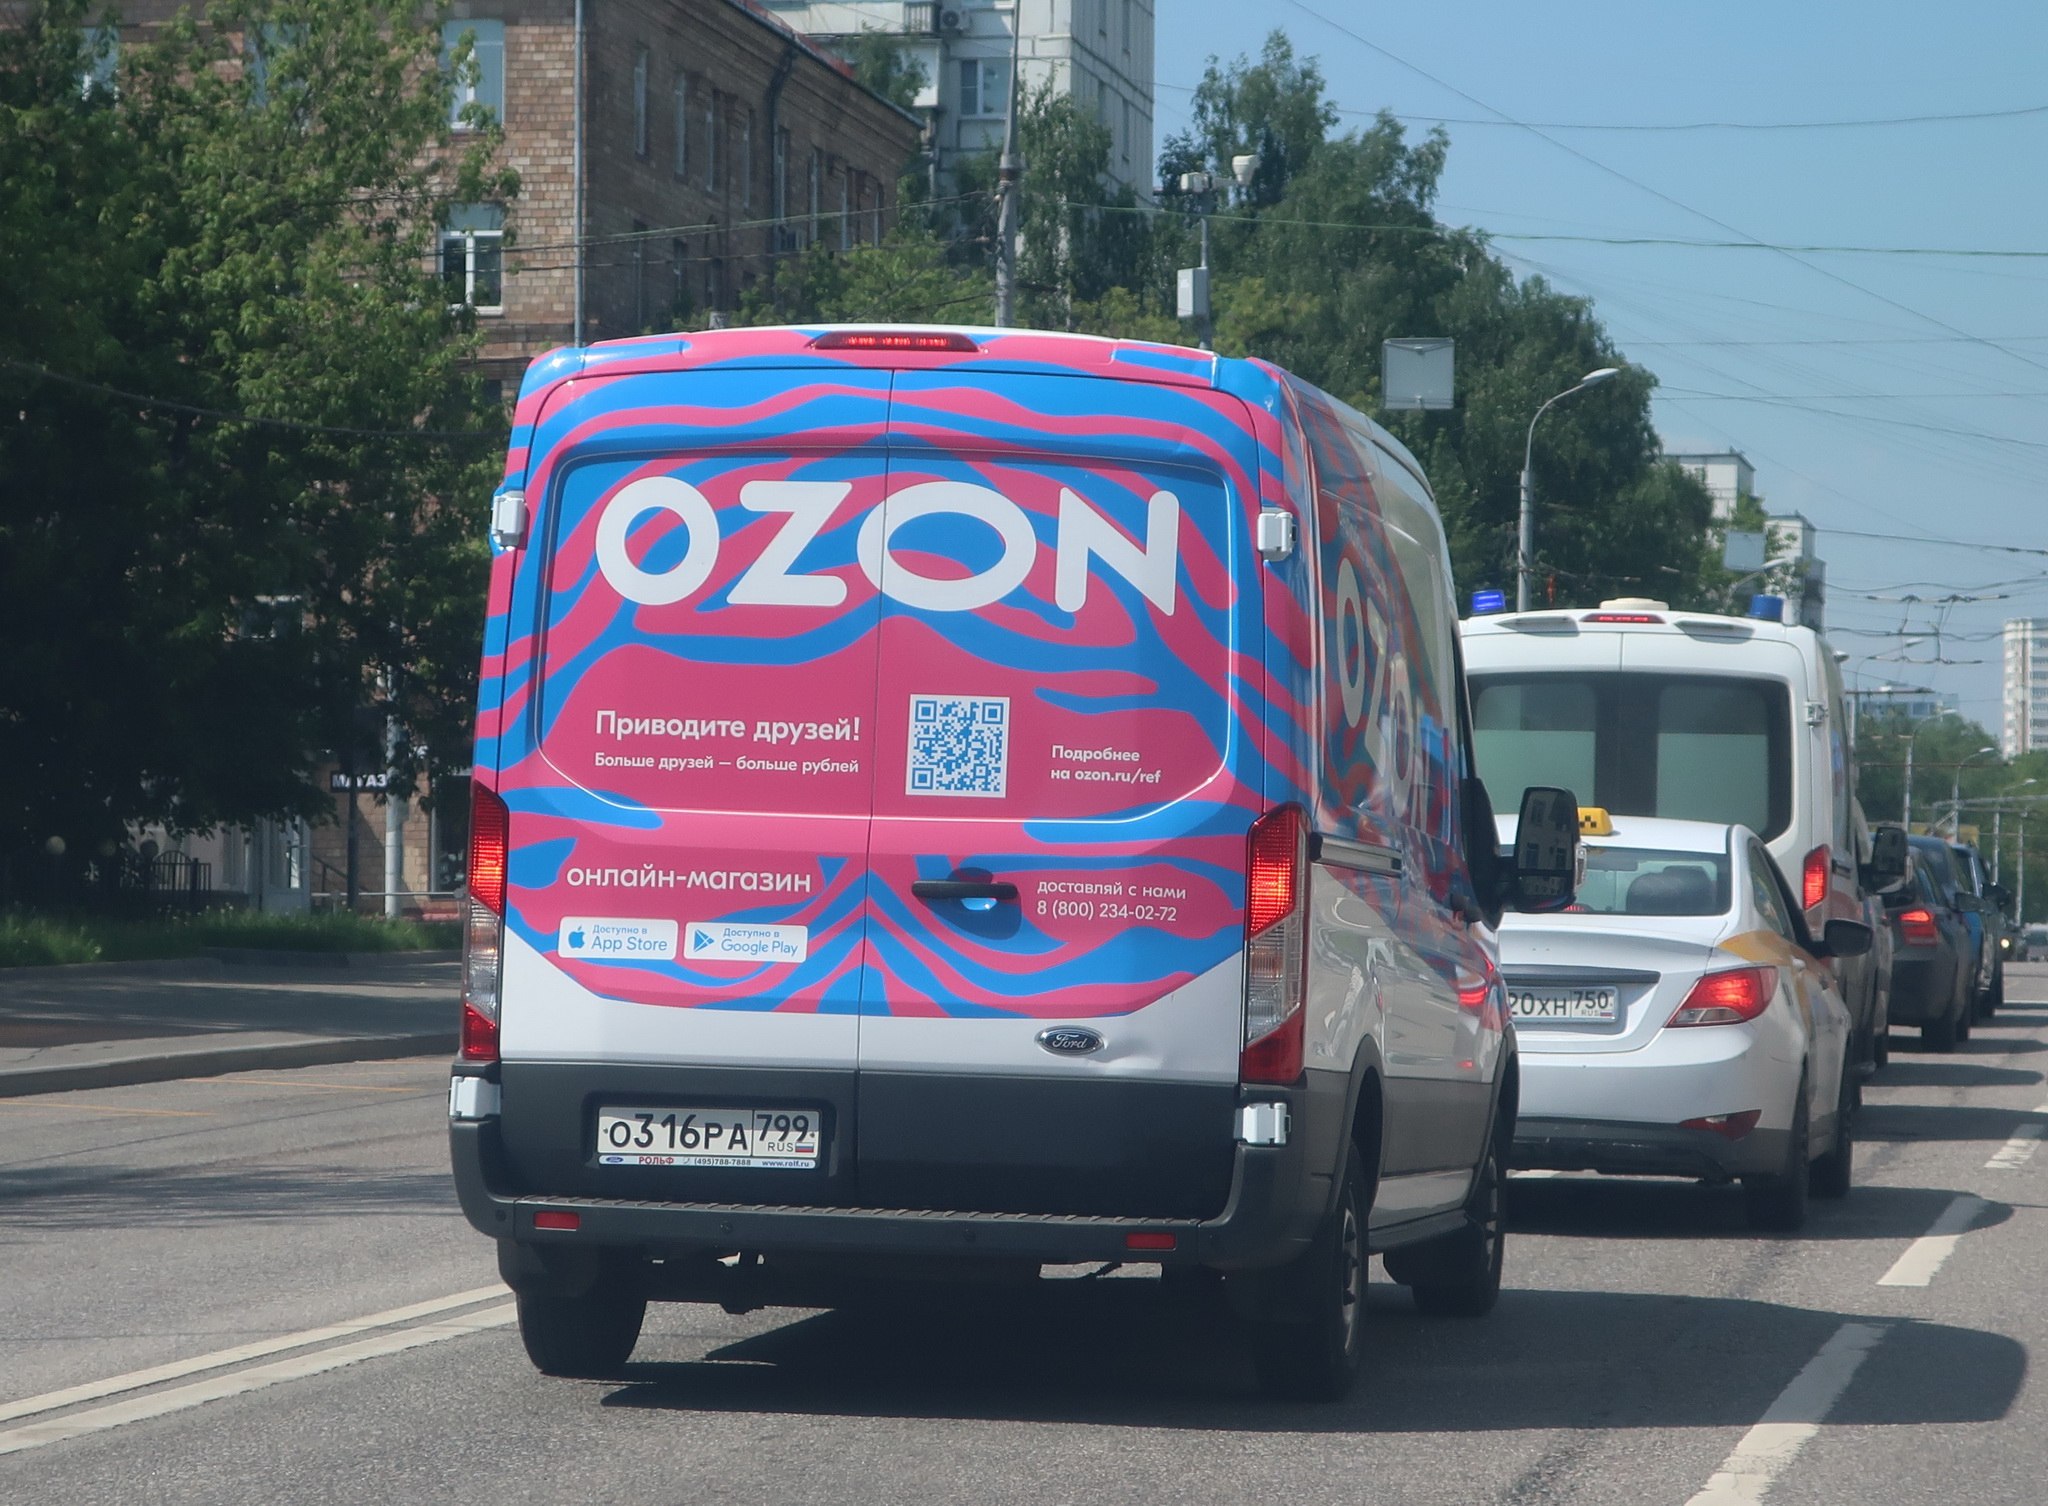 Авто на озоне цена. Ford Transit OZON. Форд Транзит Озон. Брендирование авто OZON. Брендированные машины Озон.